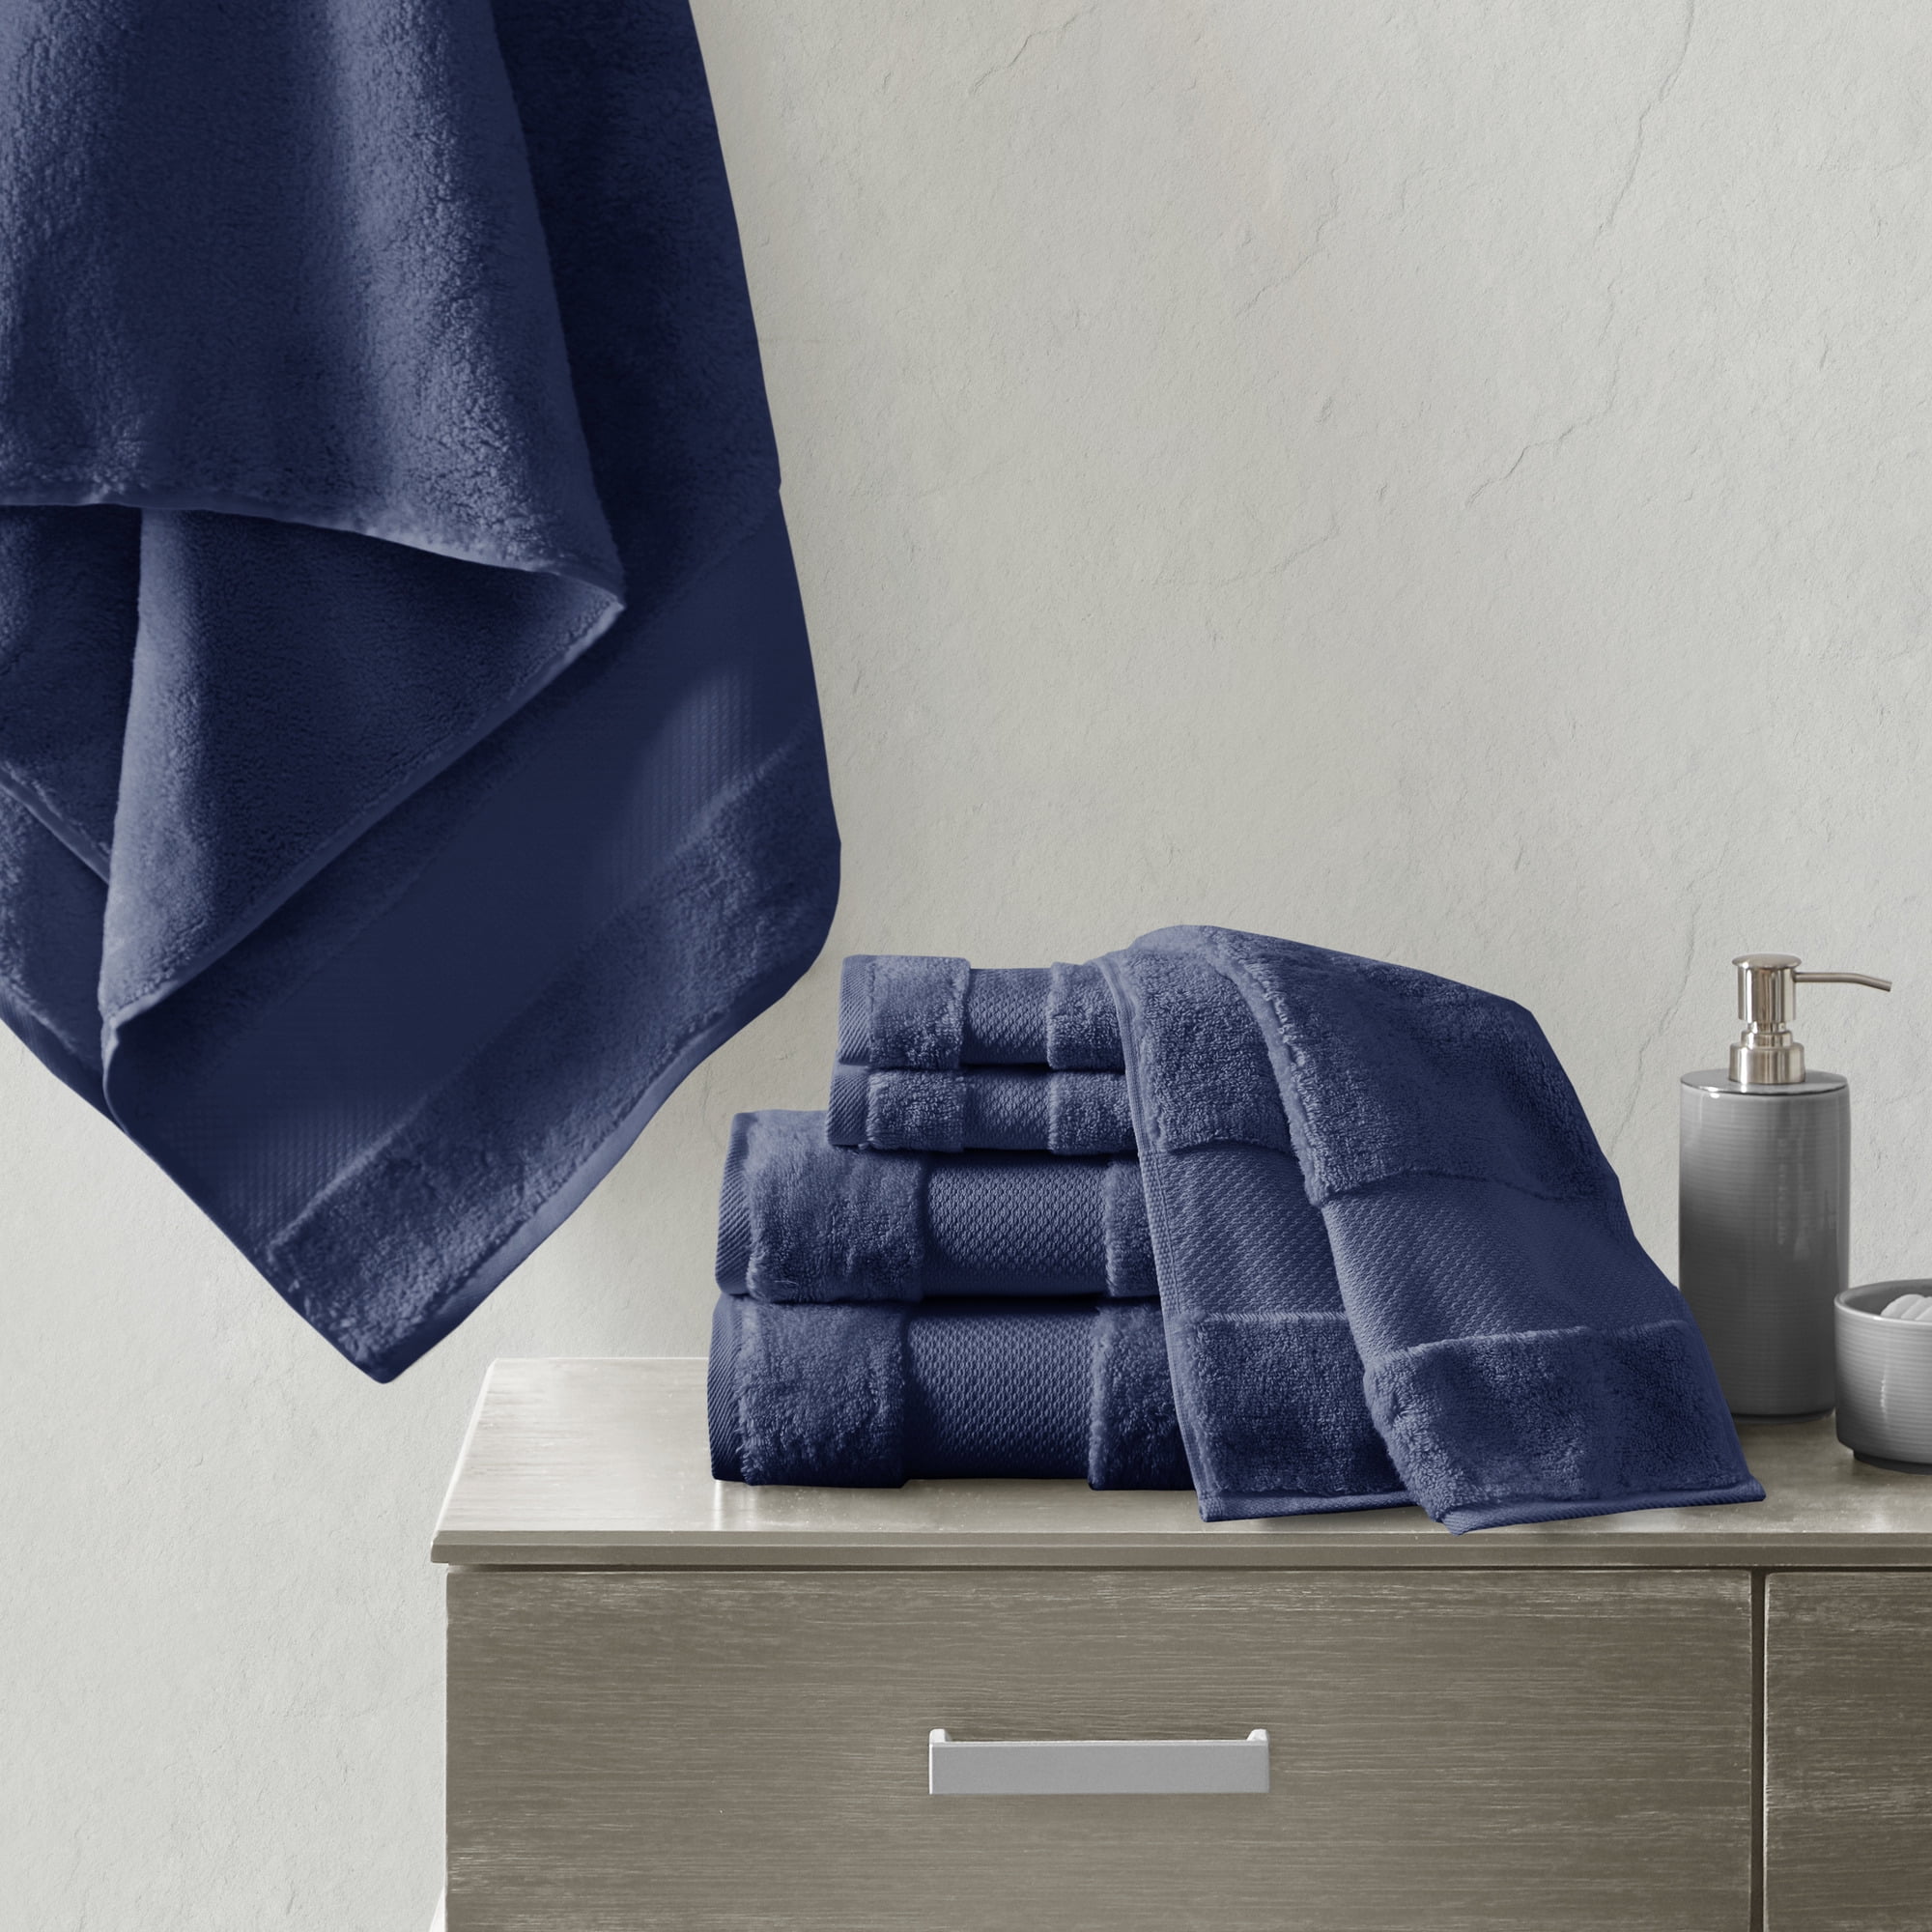 BNM Turkish Cotton Luxury Hotel 6 Piece Hand Towel Set, Navy Blue